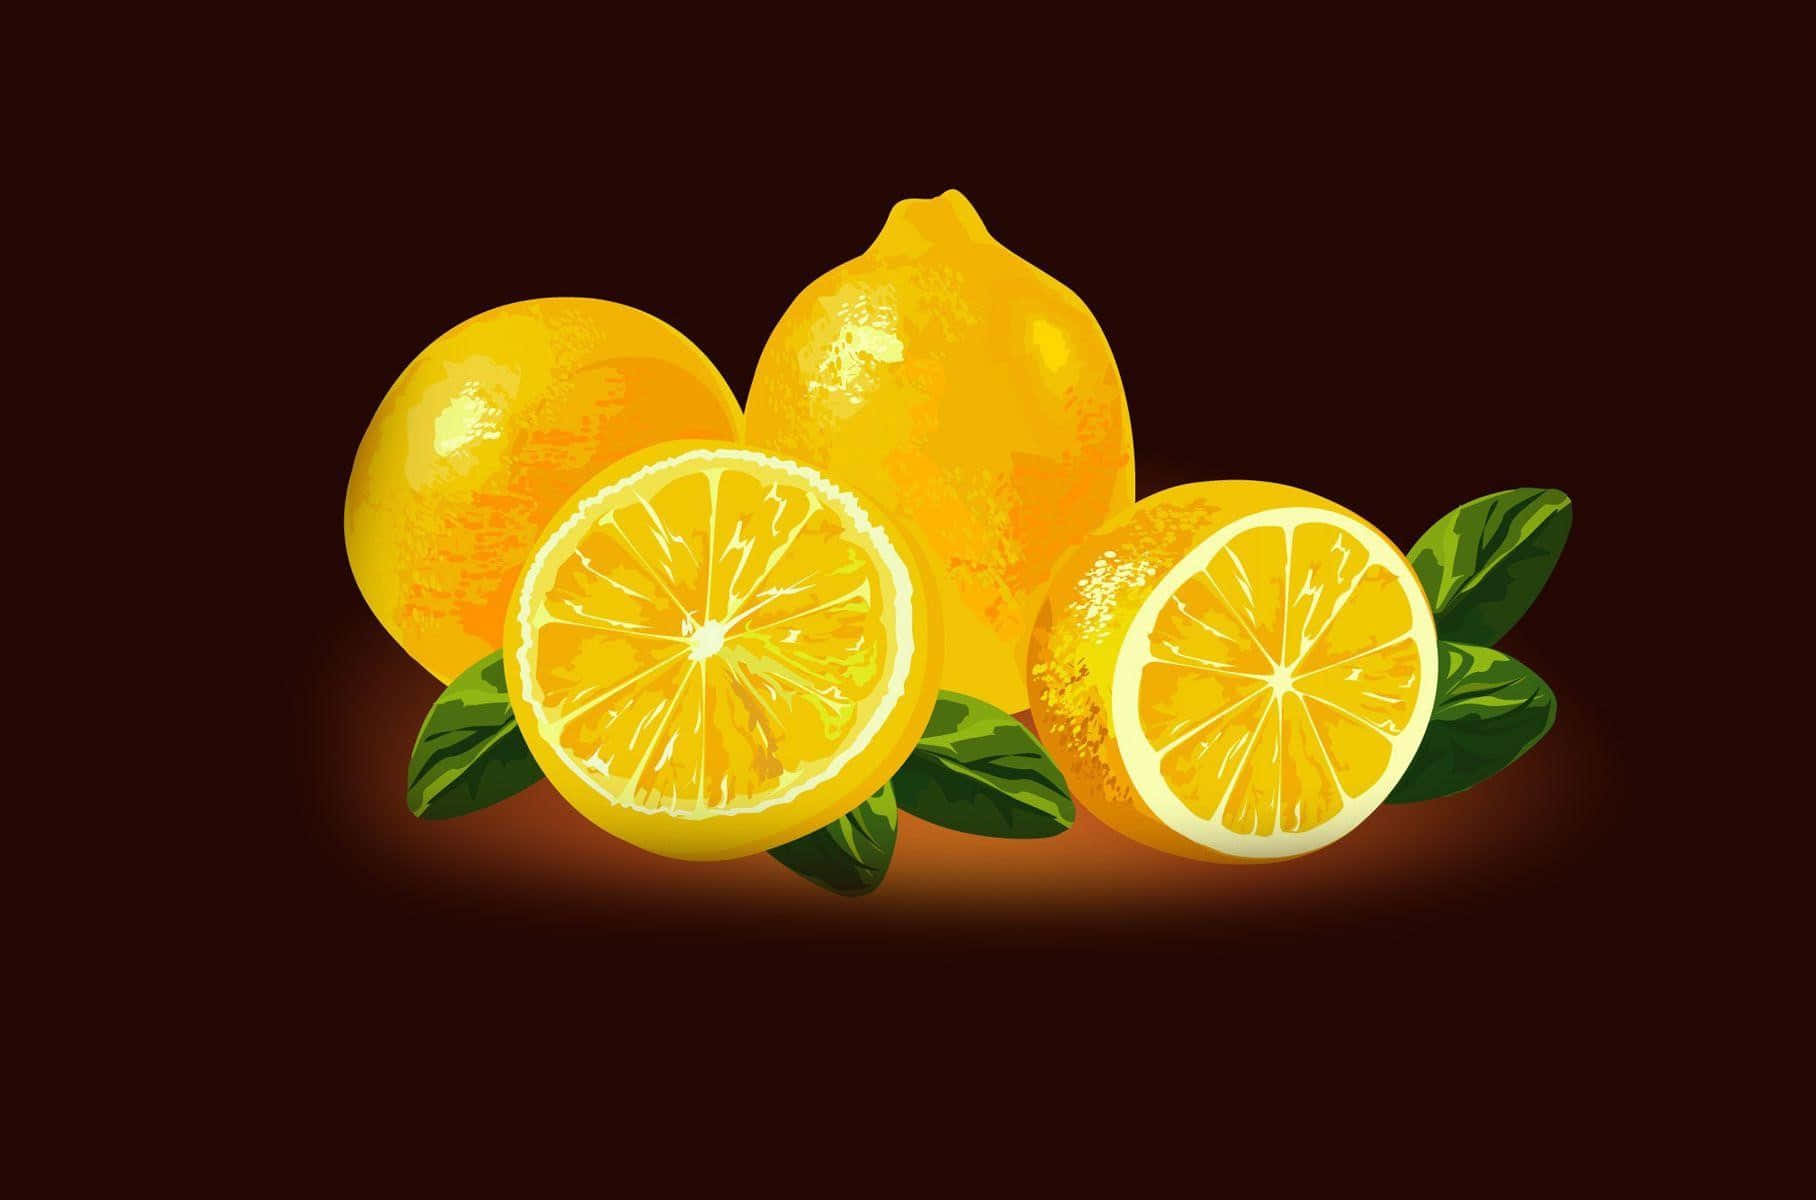 Refrescantementedelicioso: Un Limón